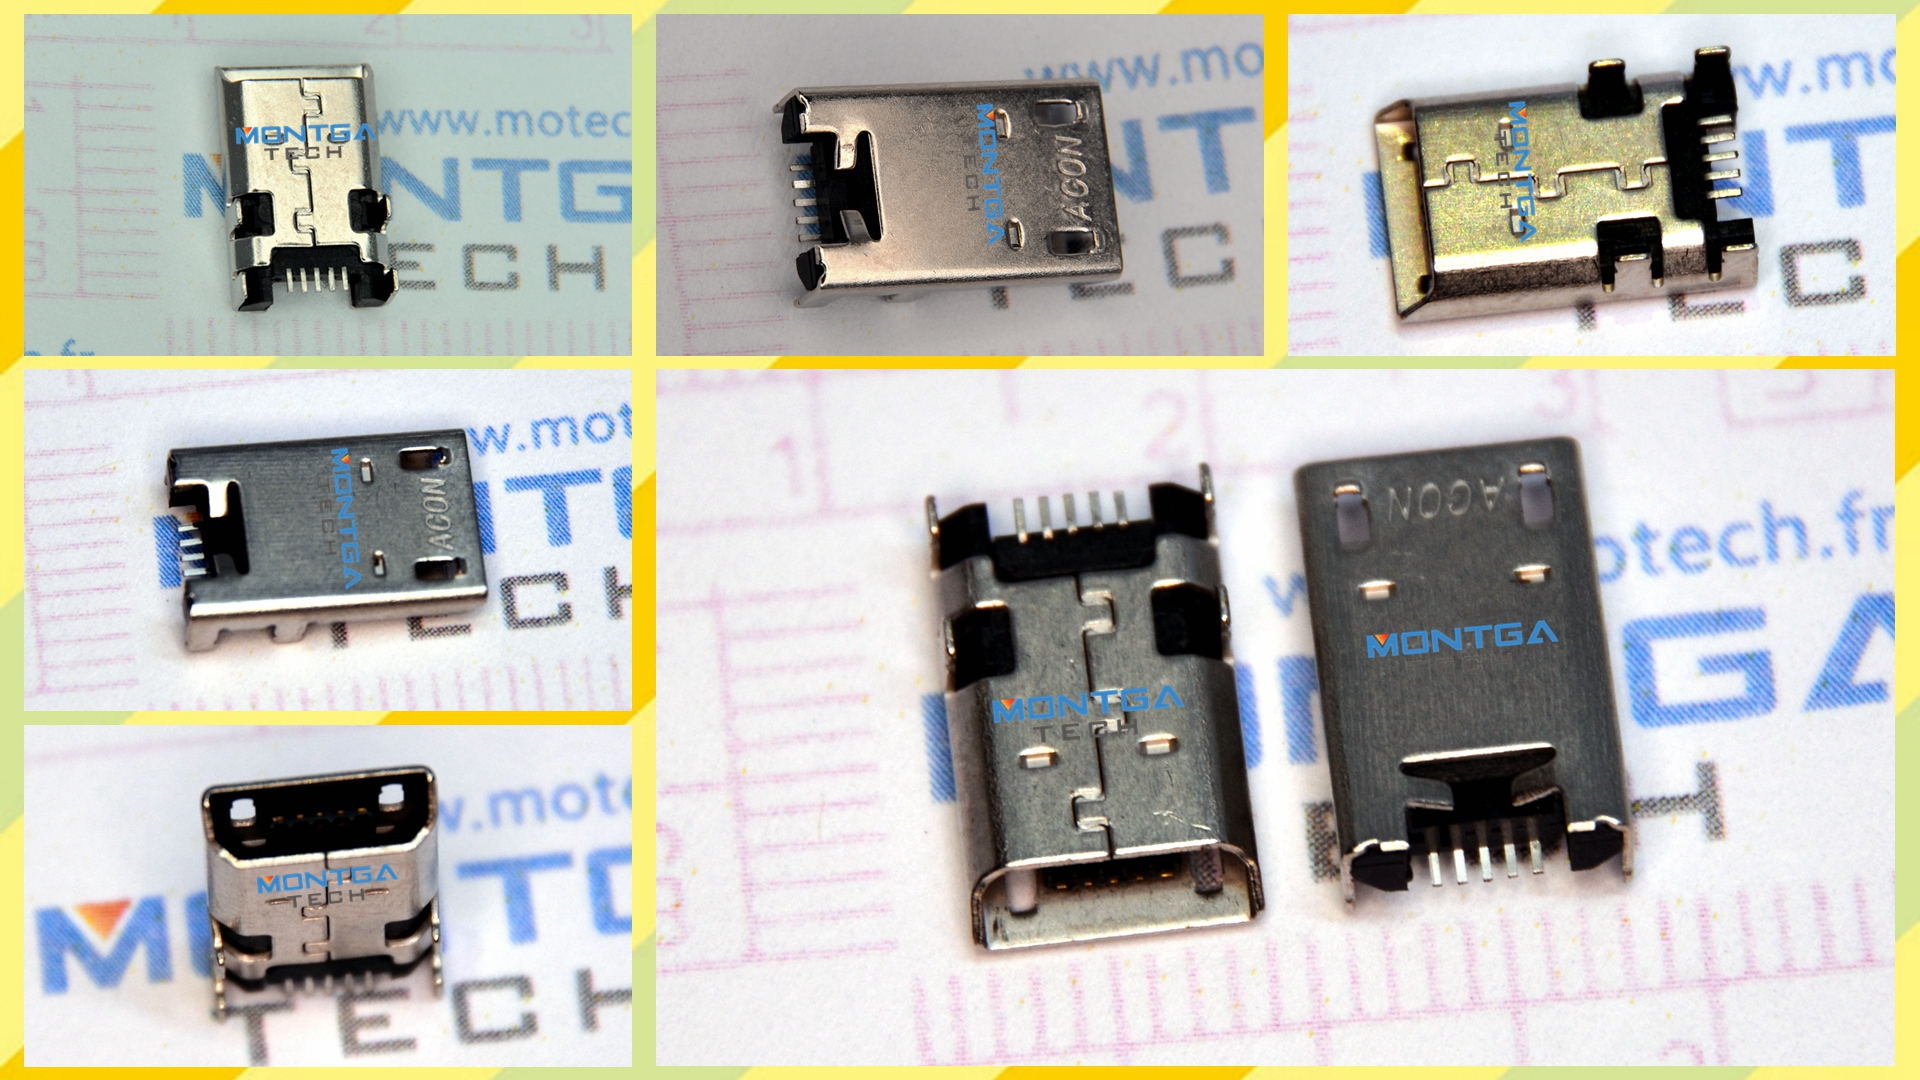  Asus ME301T MeMO Pad Smart 10 K001 Micro USB, Asus ME301T MeMO Pad Smart 10 K001 Port USB à souder, Asus ME301T MeMO Pad Smart 10 K001 prise connecteur, Asus ME301T MeMO Pad Smart 10 K001 DC JACK, Asus ME301T MeMO Pad Smart 10 K001 Connecteur alimentation, Asus ME301T MeMO Pad Smart 10 K001 connecteur de charge, Asus ME301T MeMO Pad Smart 10 K001 Power Jack, Asus ME301T MeMO Pad Smart 10 K001 connecteur de charge, 